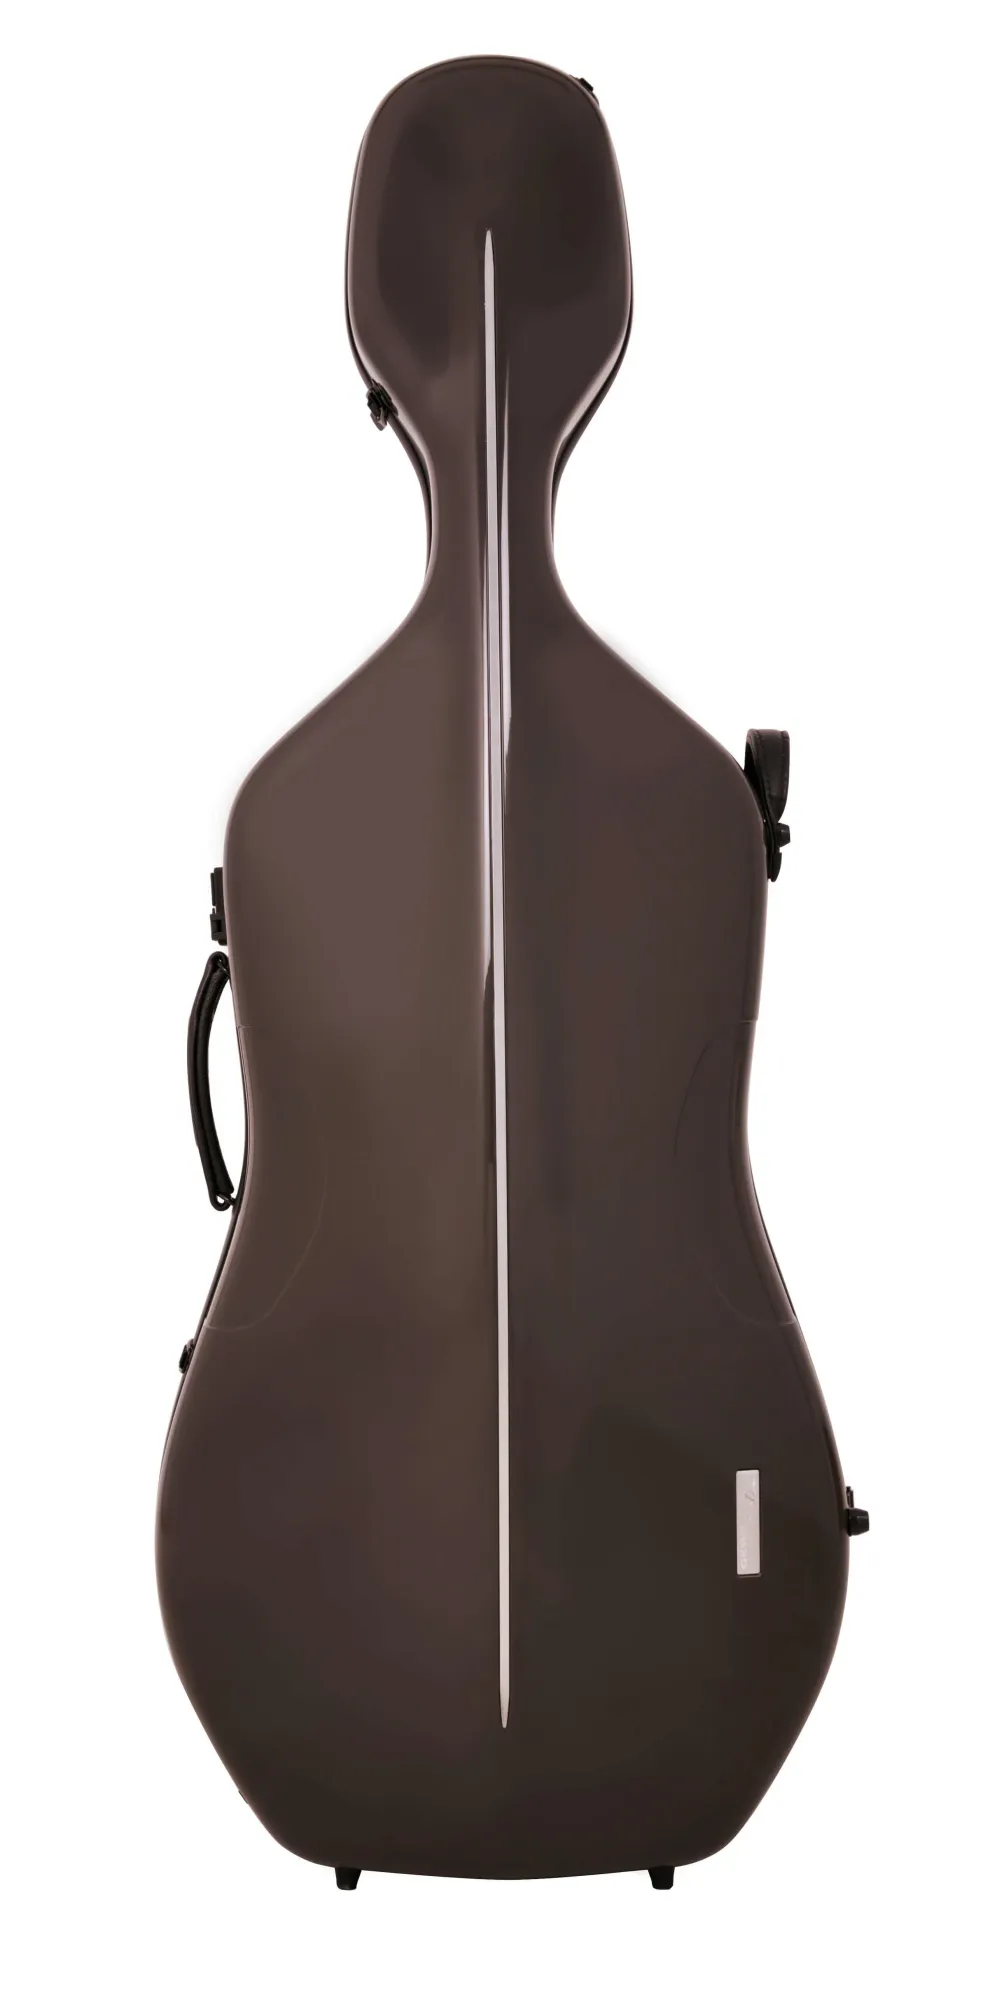 GEWA AIR Cello (Violoncello) Etui (Koffer) außen braun, innen schwarz